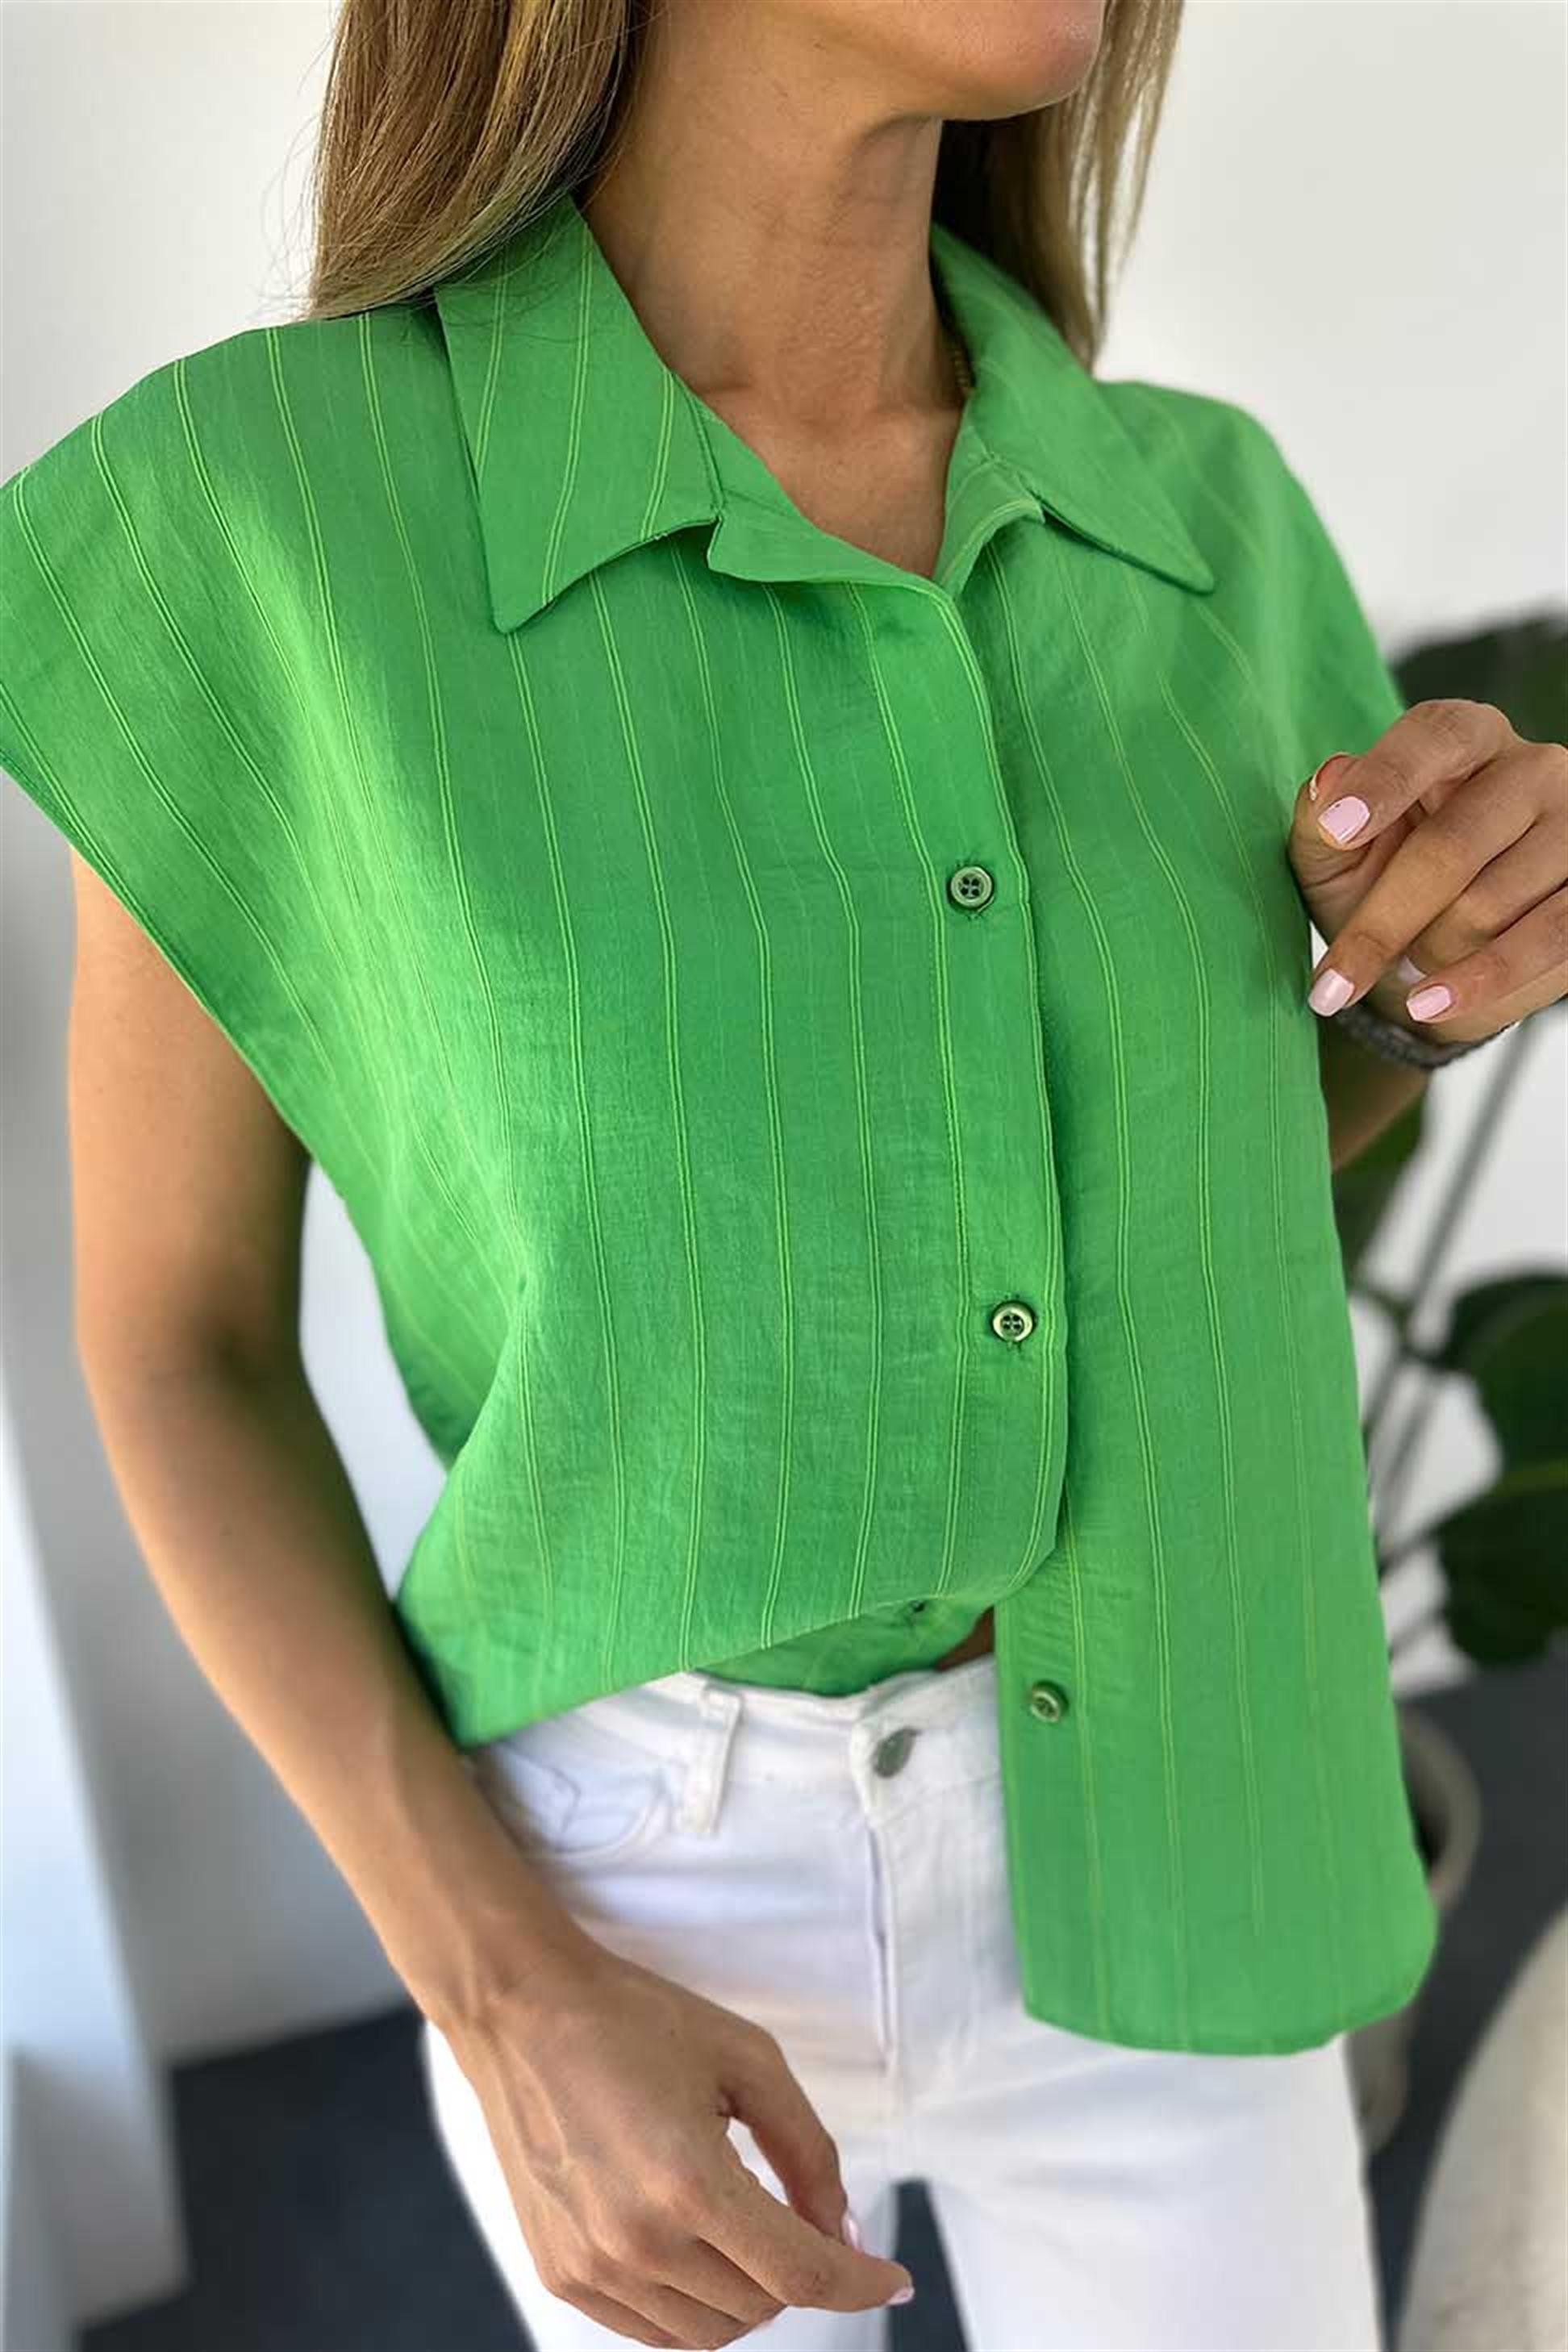 Lüks Kalite Dökümlü Viskon Kumaş Kolsuz Kadın Gömlek Yeşil - Butik Gardrop